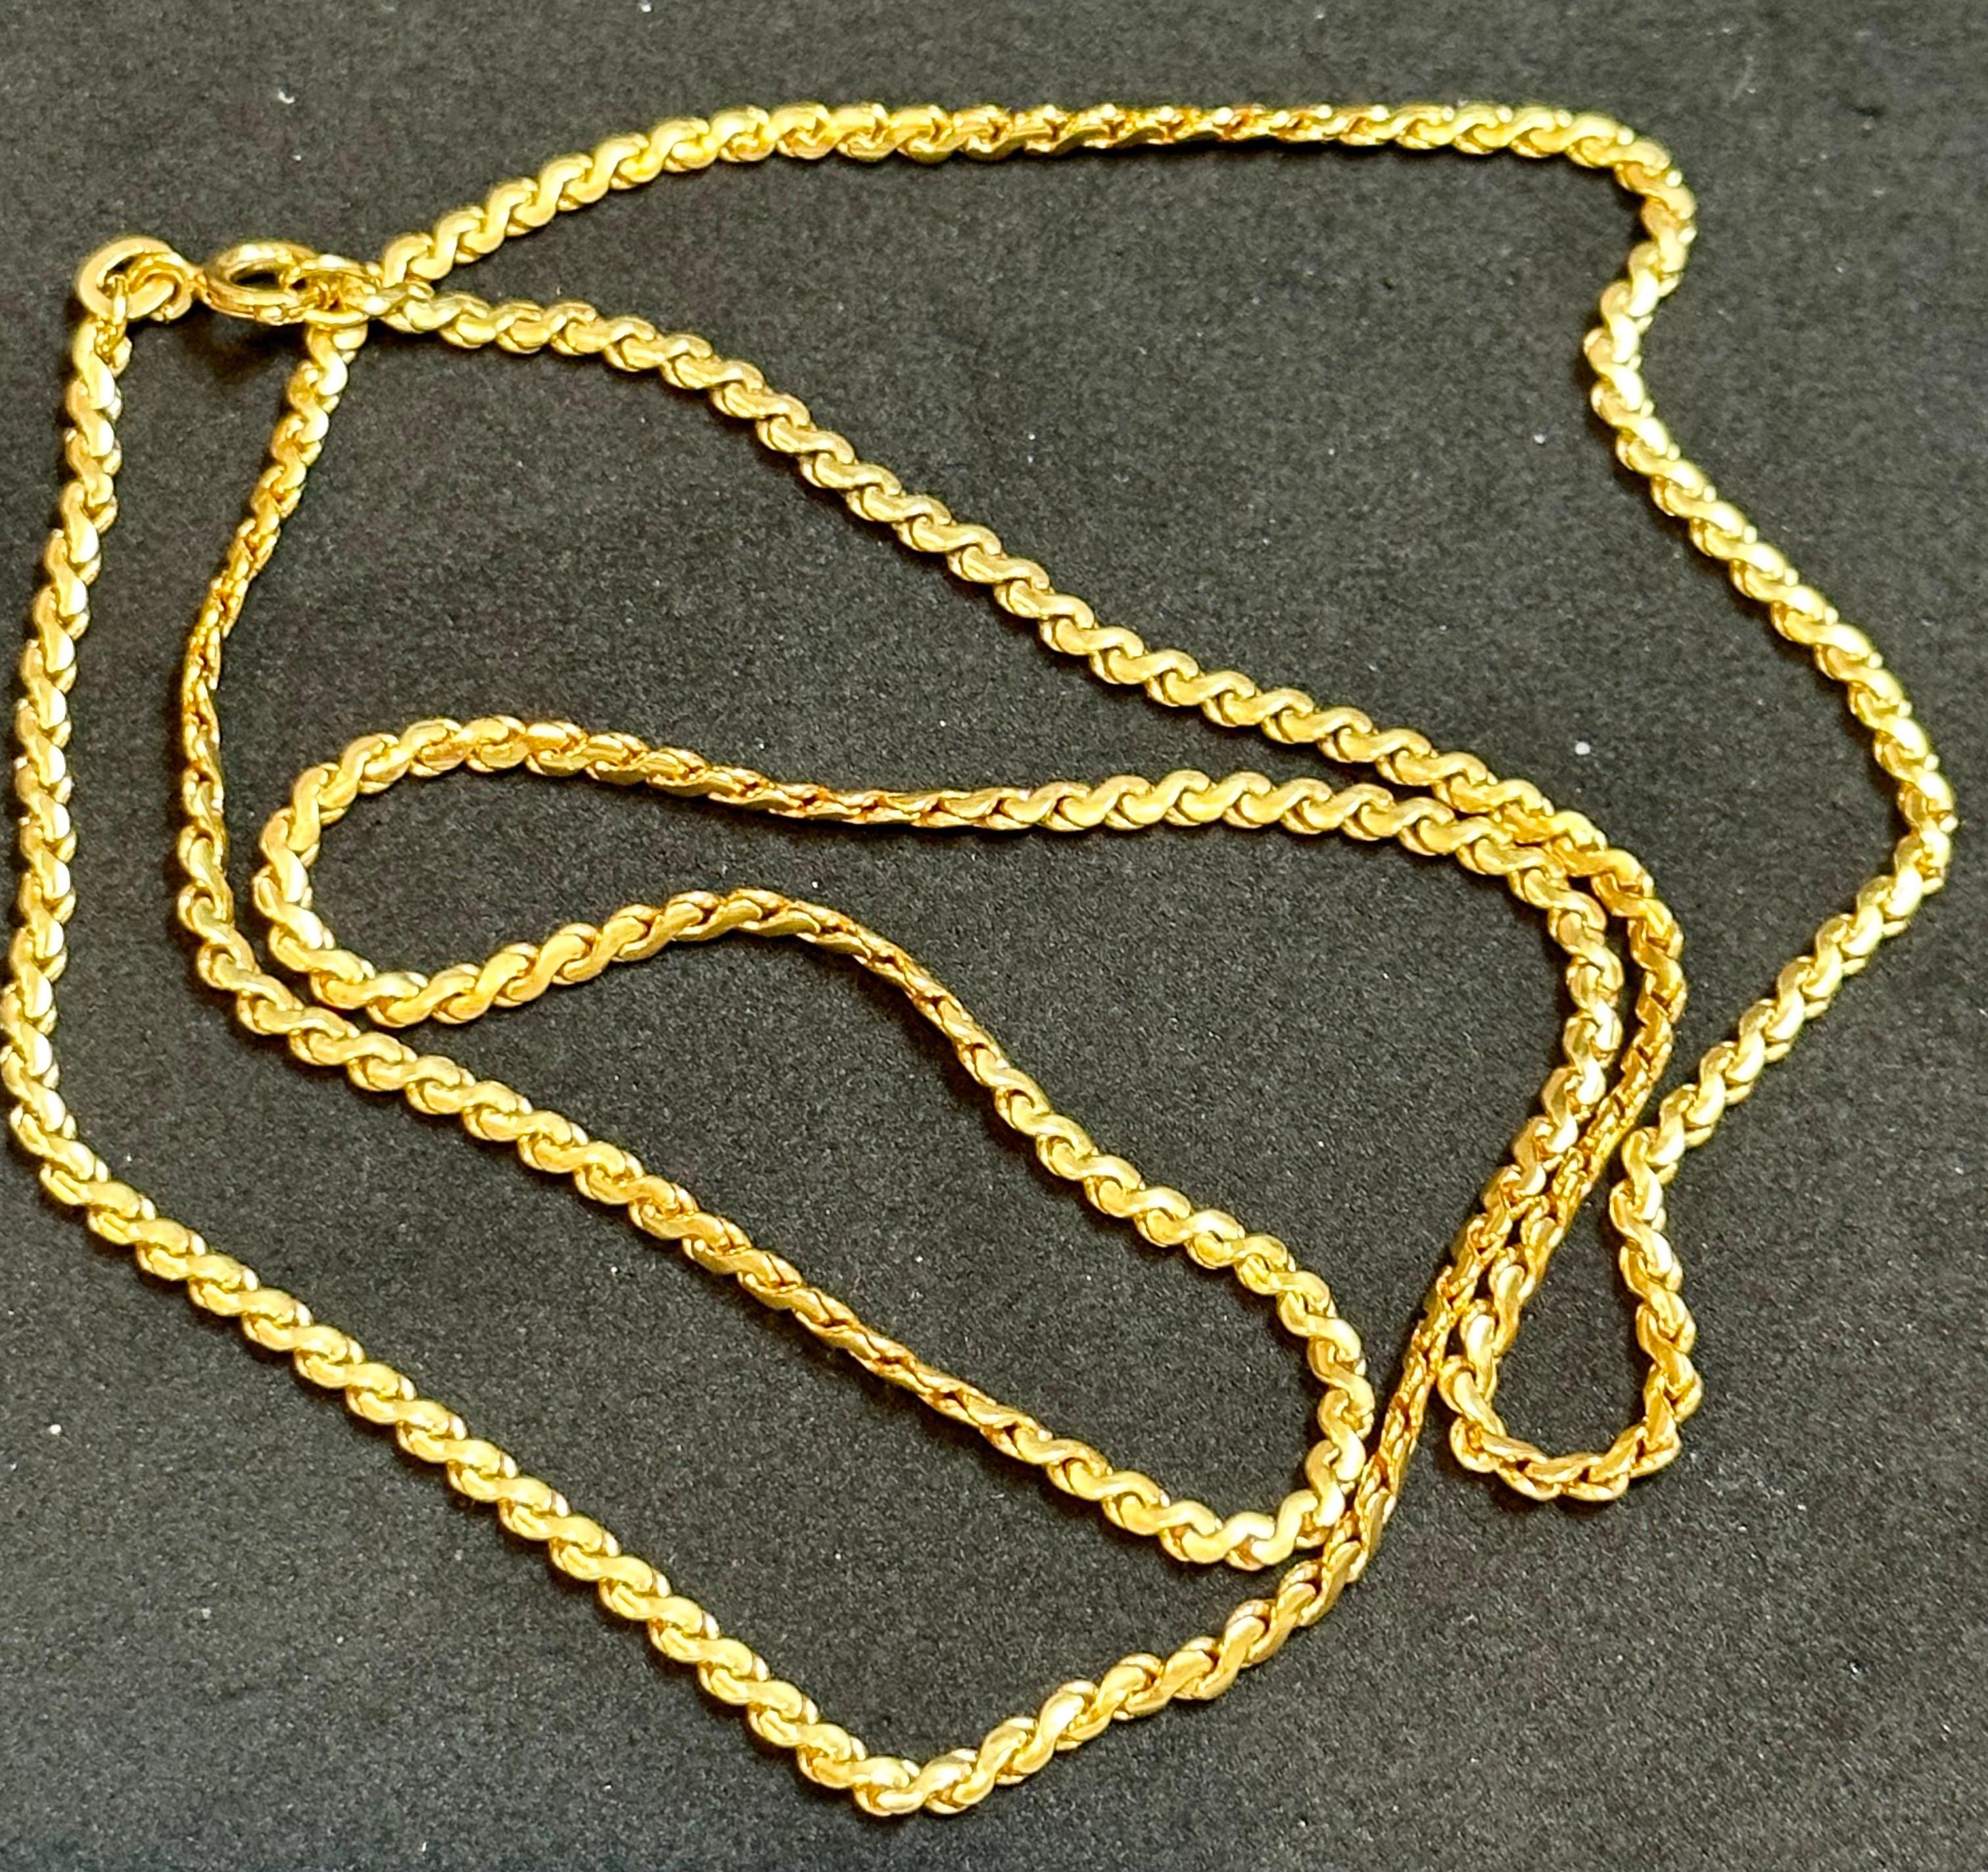 Vintage 18 Karat Gelbgold 9.6  Gm S link  Kette Halskette, 24  Zoll lang
1,22 MM breit
24 Zentimeter lange Halskette

Das Gewicht der Halskette beträgt 9,6 Gramm 

Bitte sehen Sie sich alle Bilder an
Es ist sehr schwer, die wahre Farbe und den Glanz